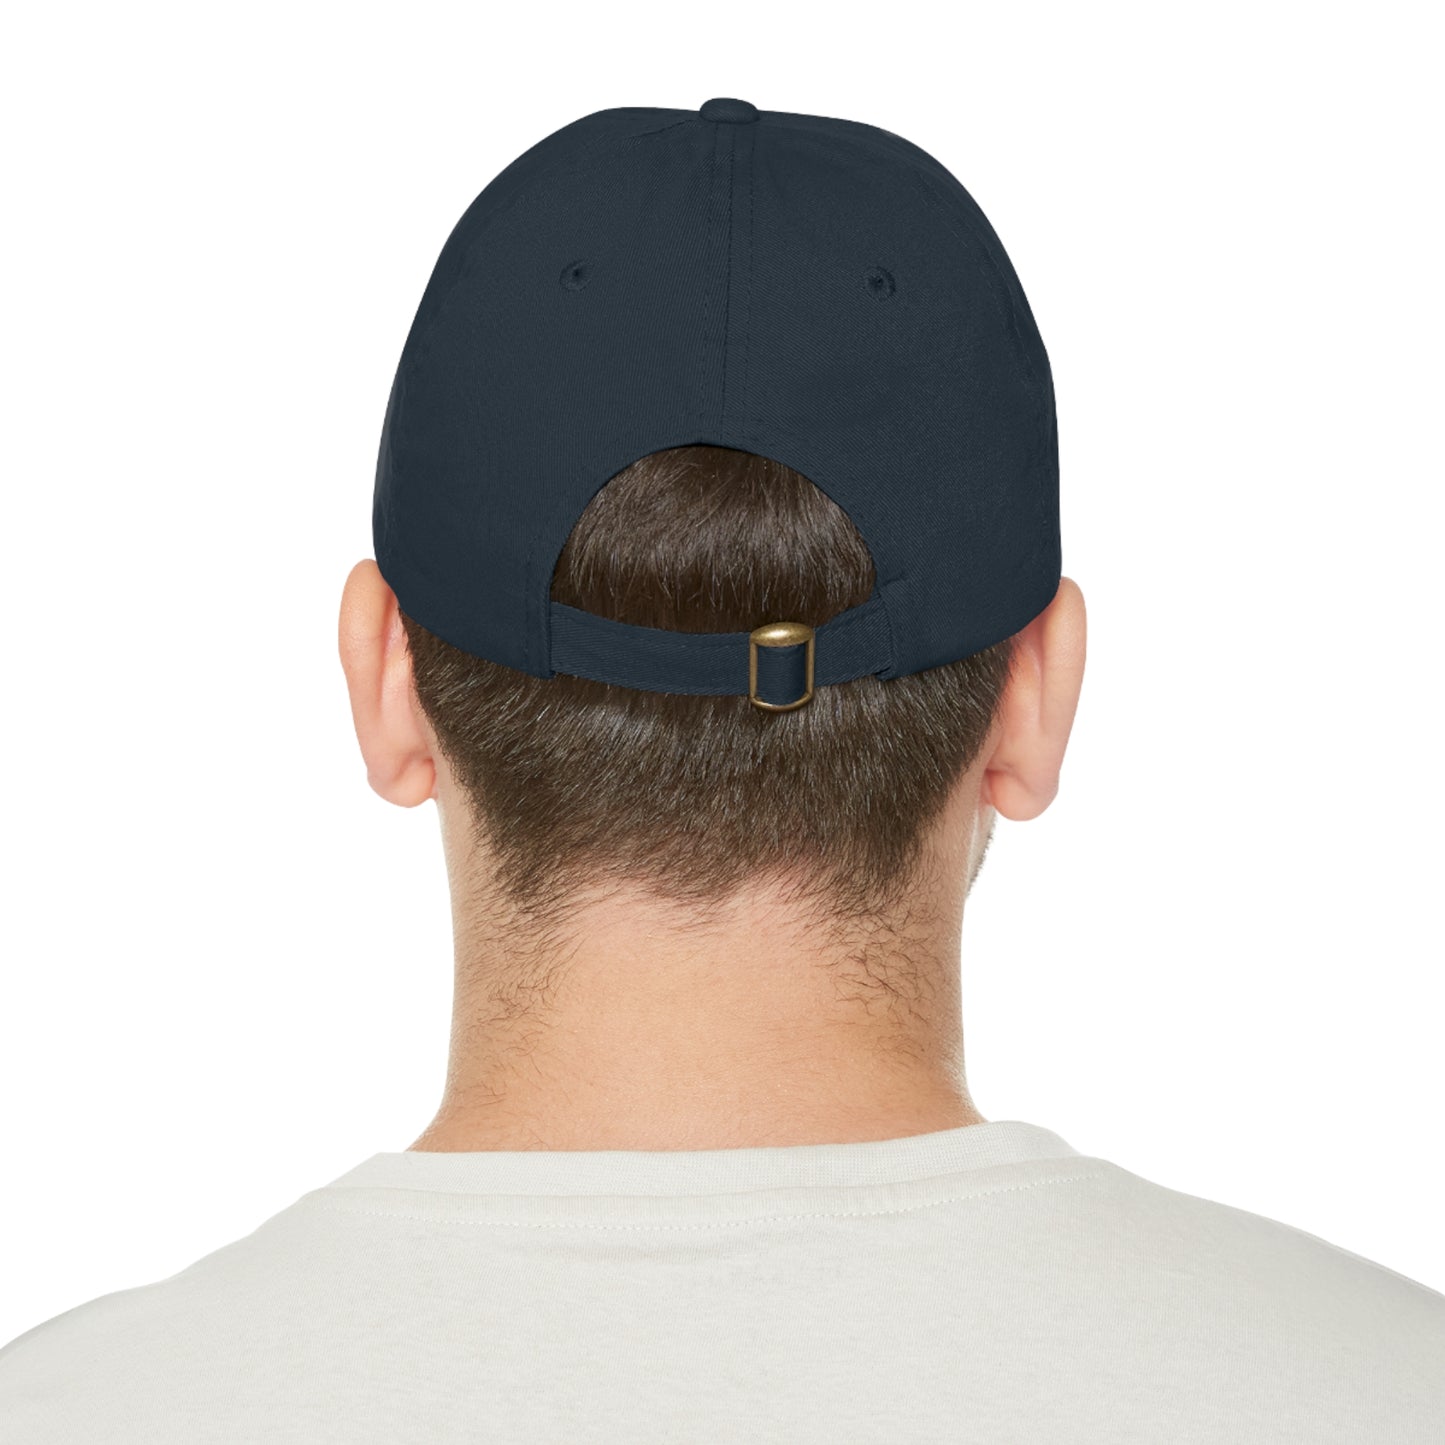 Steve Irwin Hat